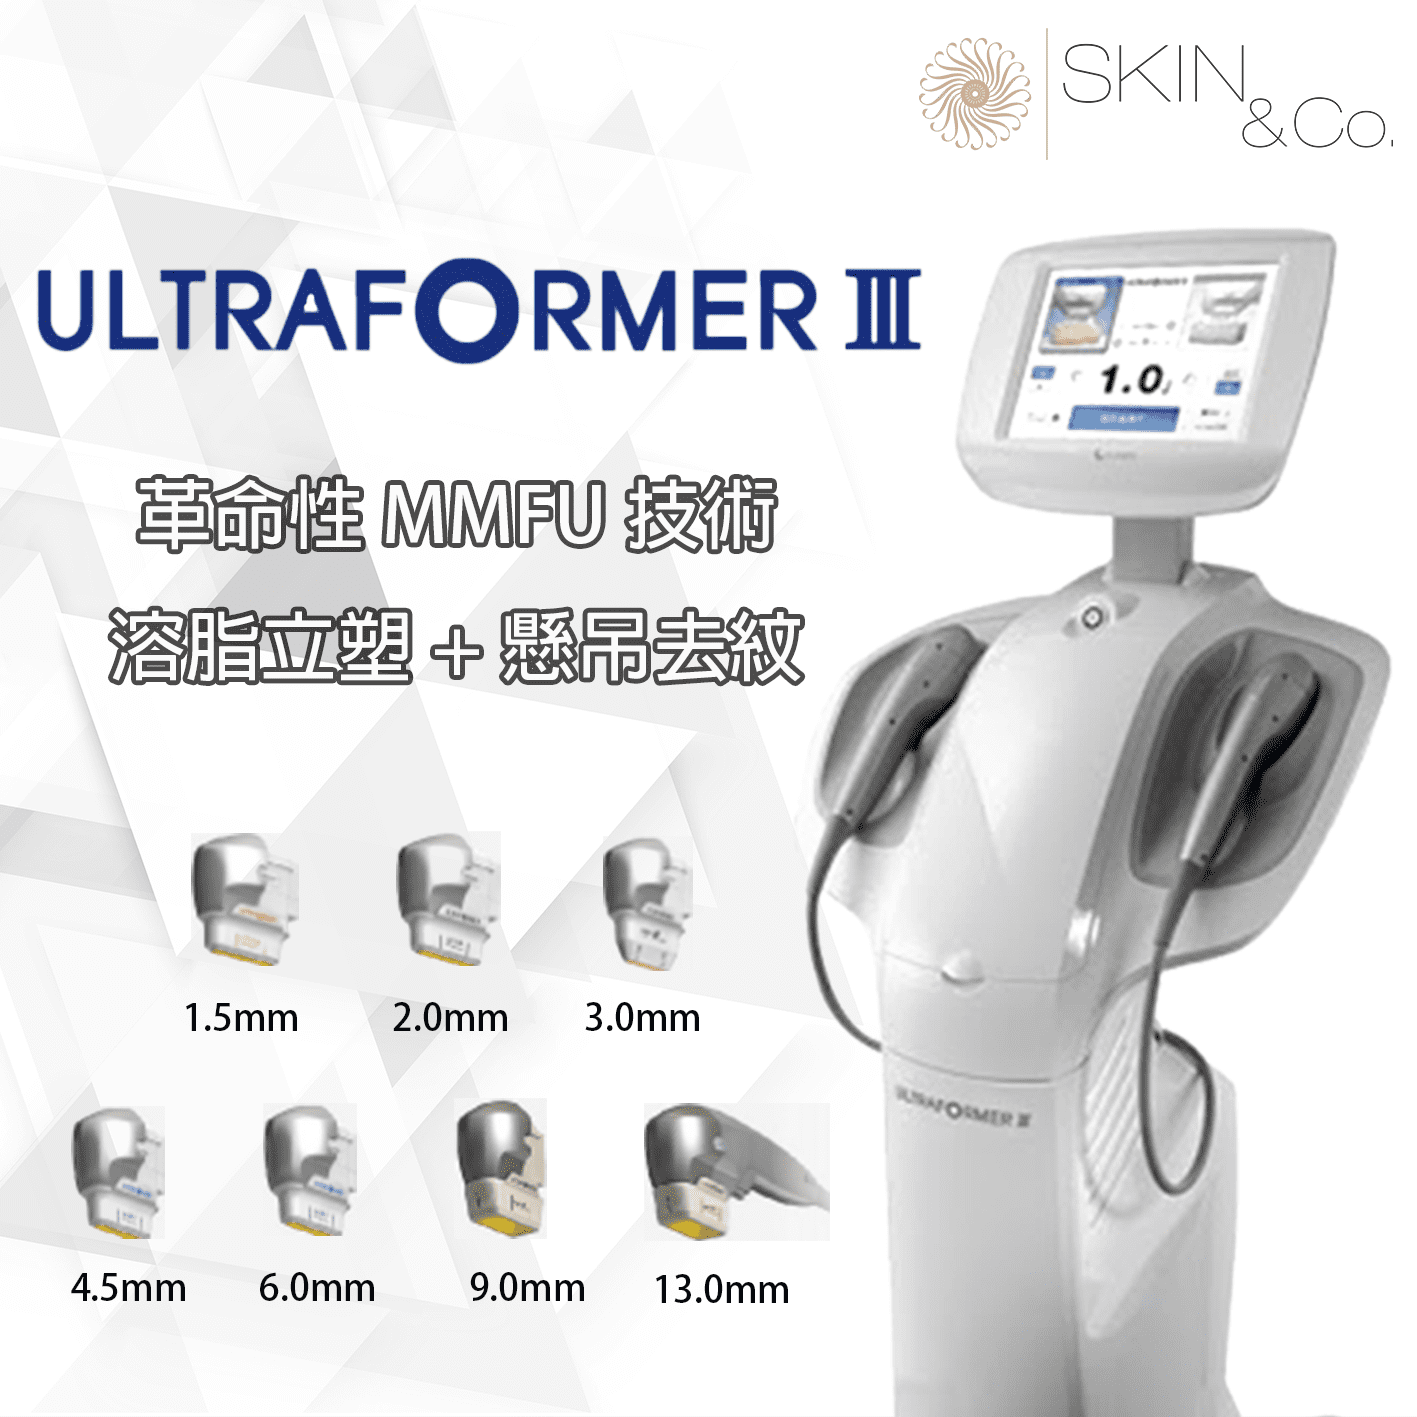 ultraformer III